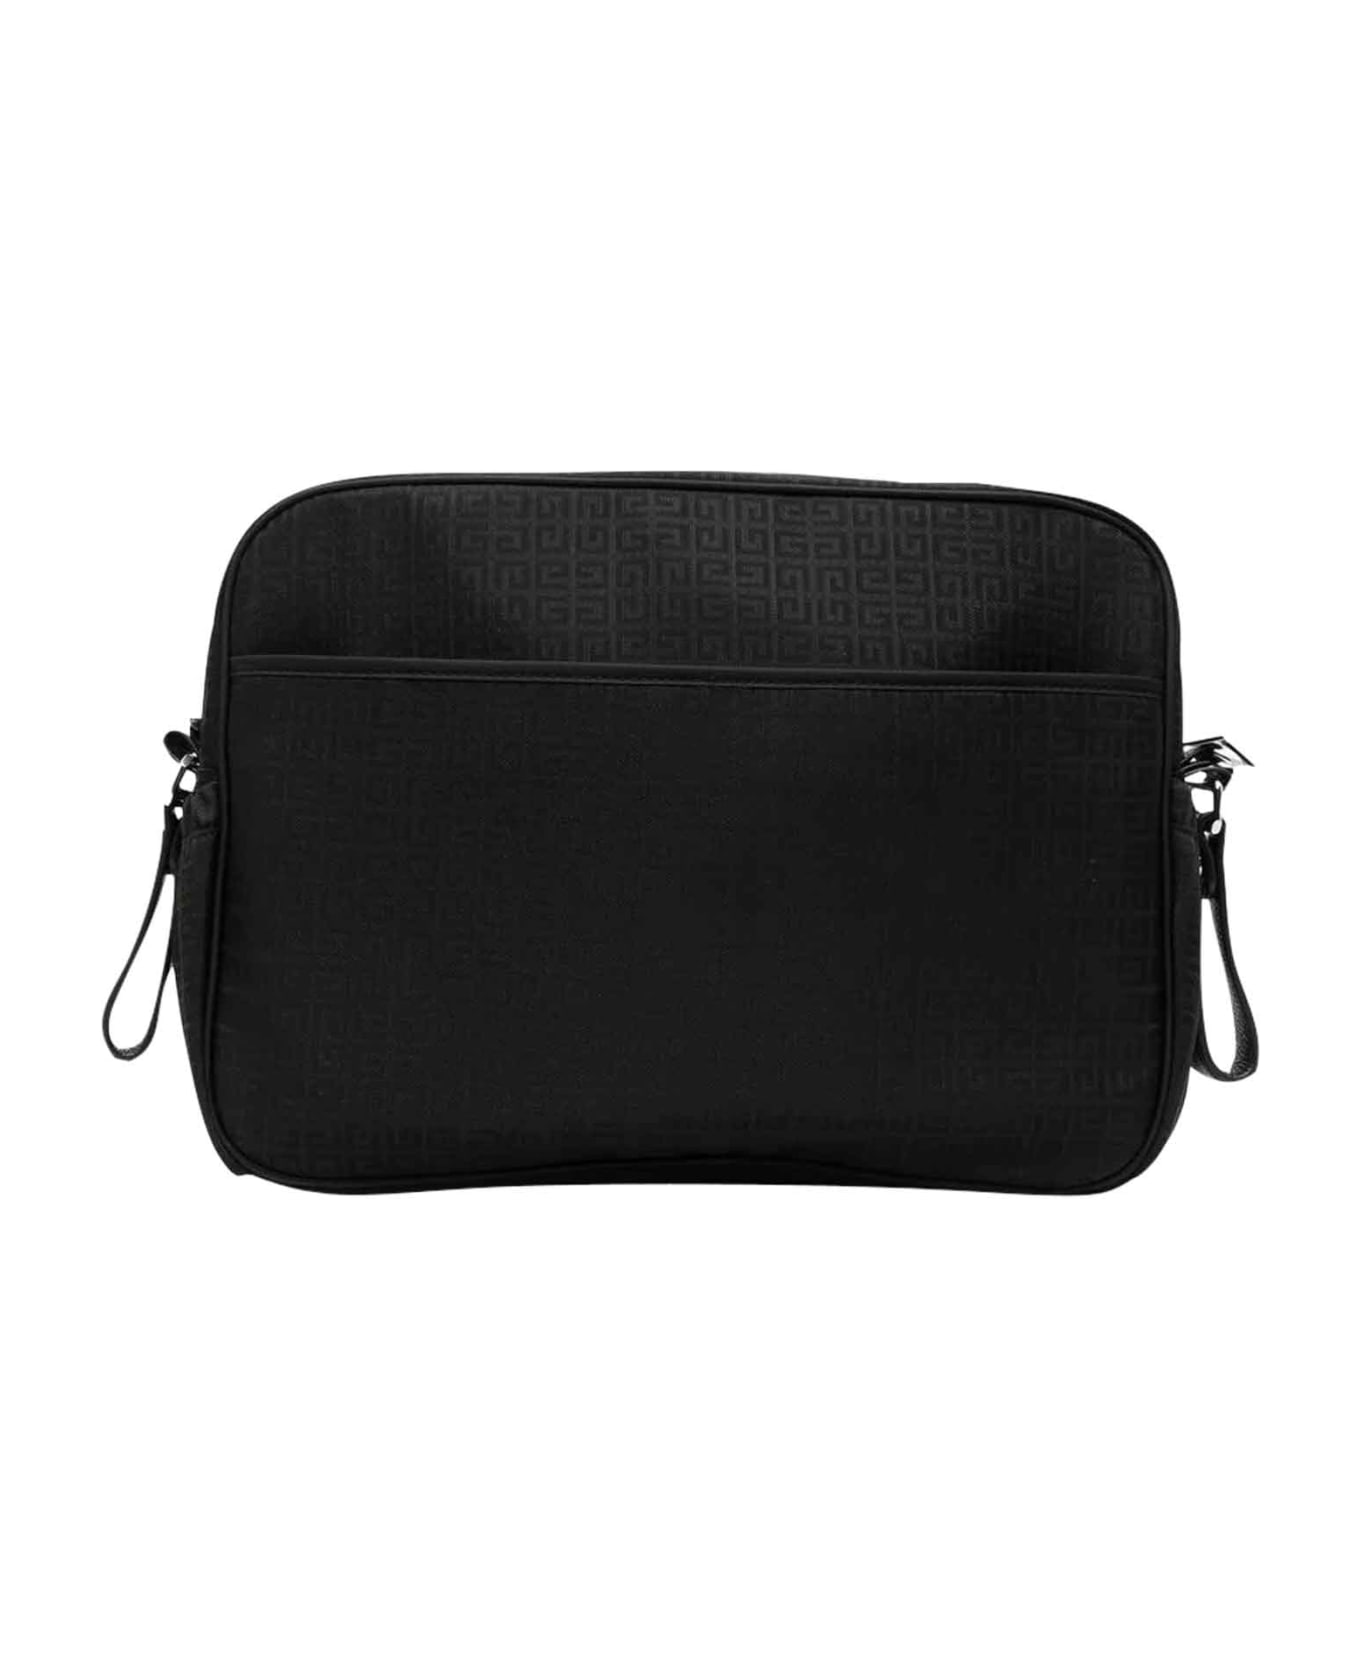 Givenchy Black Bag Unisex - Nero